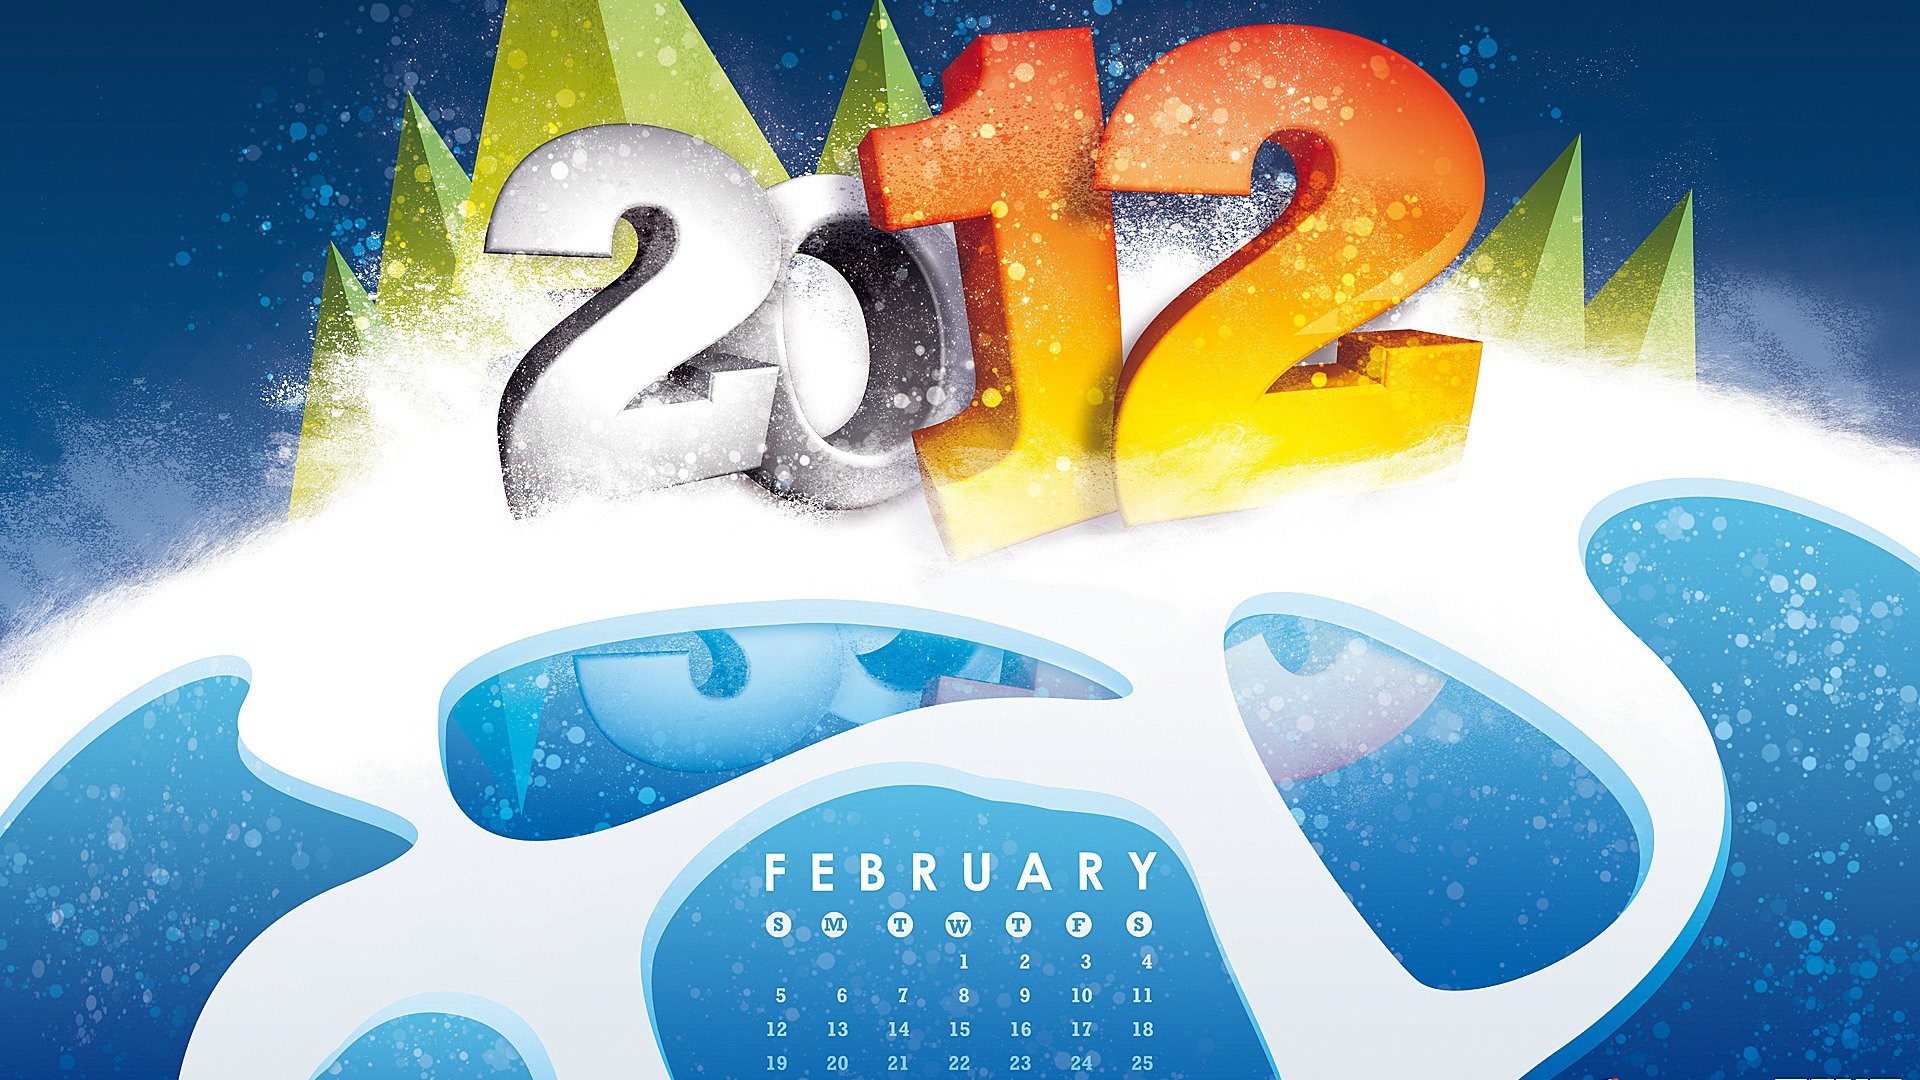 Calendario febrero 2012 fondos de pantalla (2) #1 - 1920x1080